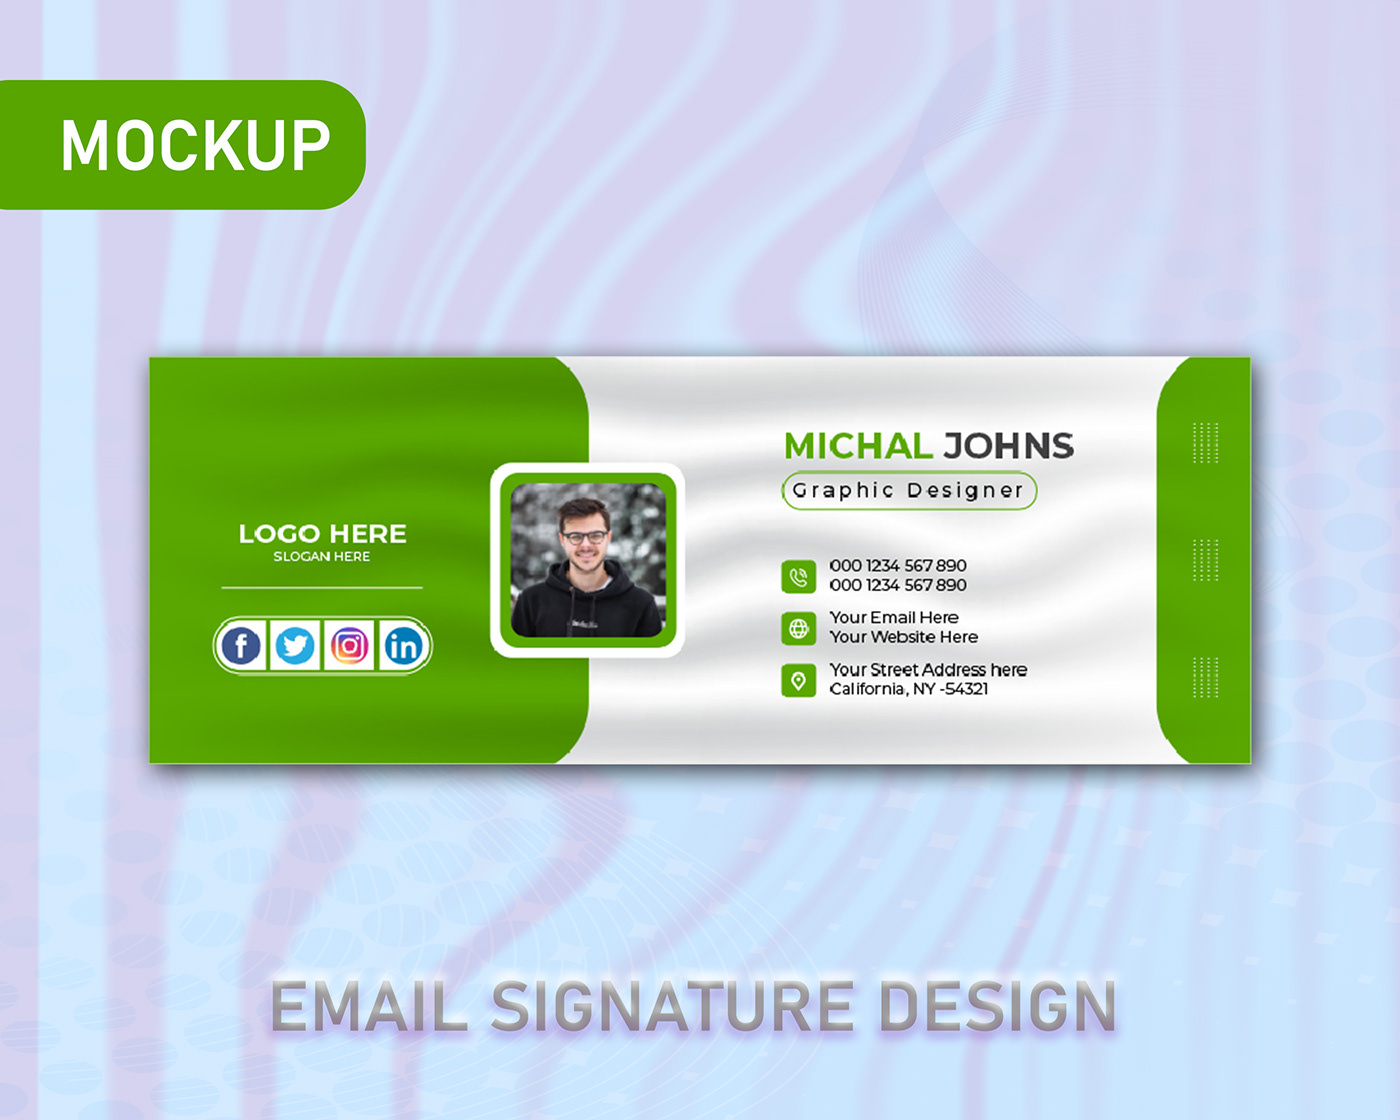 Email Design email signature design e-signature email signature modern Creative Design corporate marketing   adobe illustrator Email Signature Template